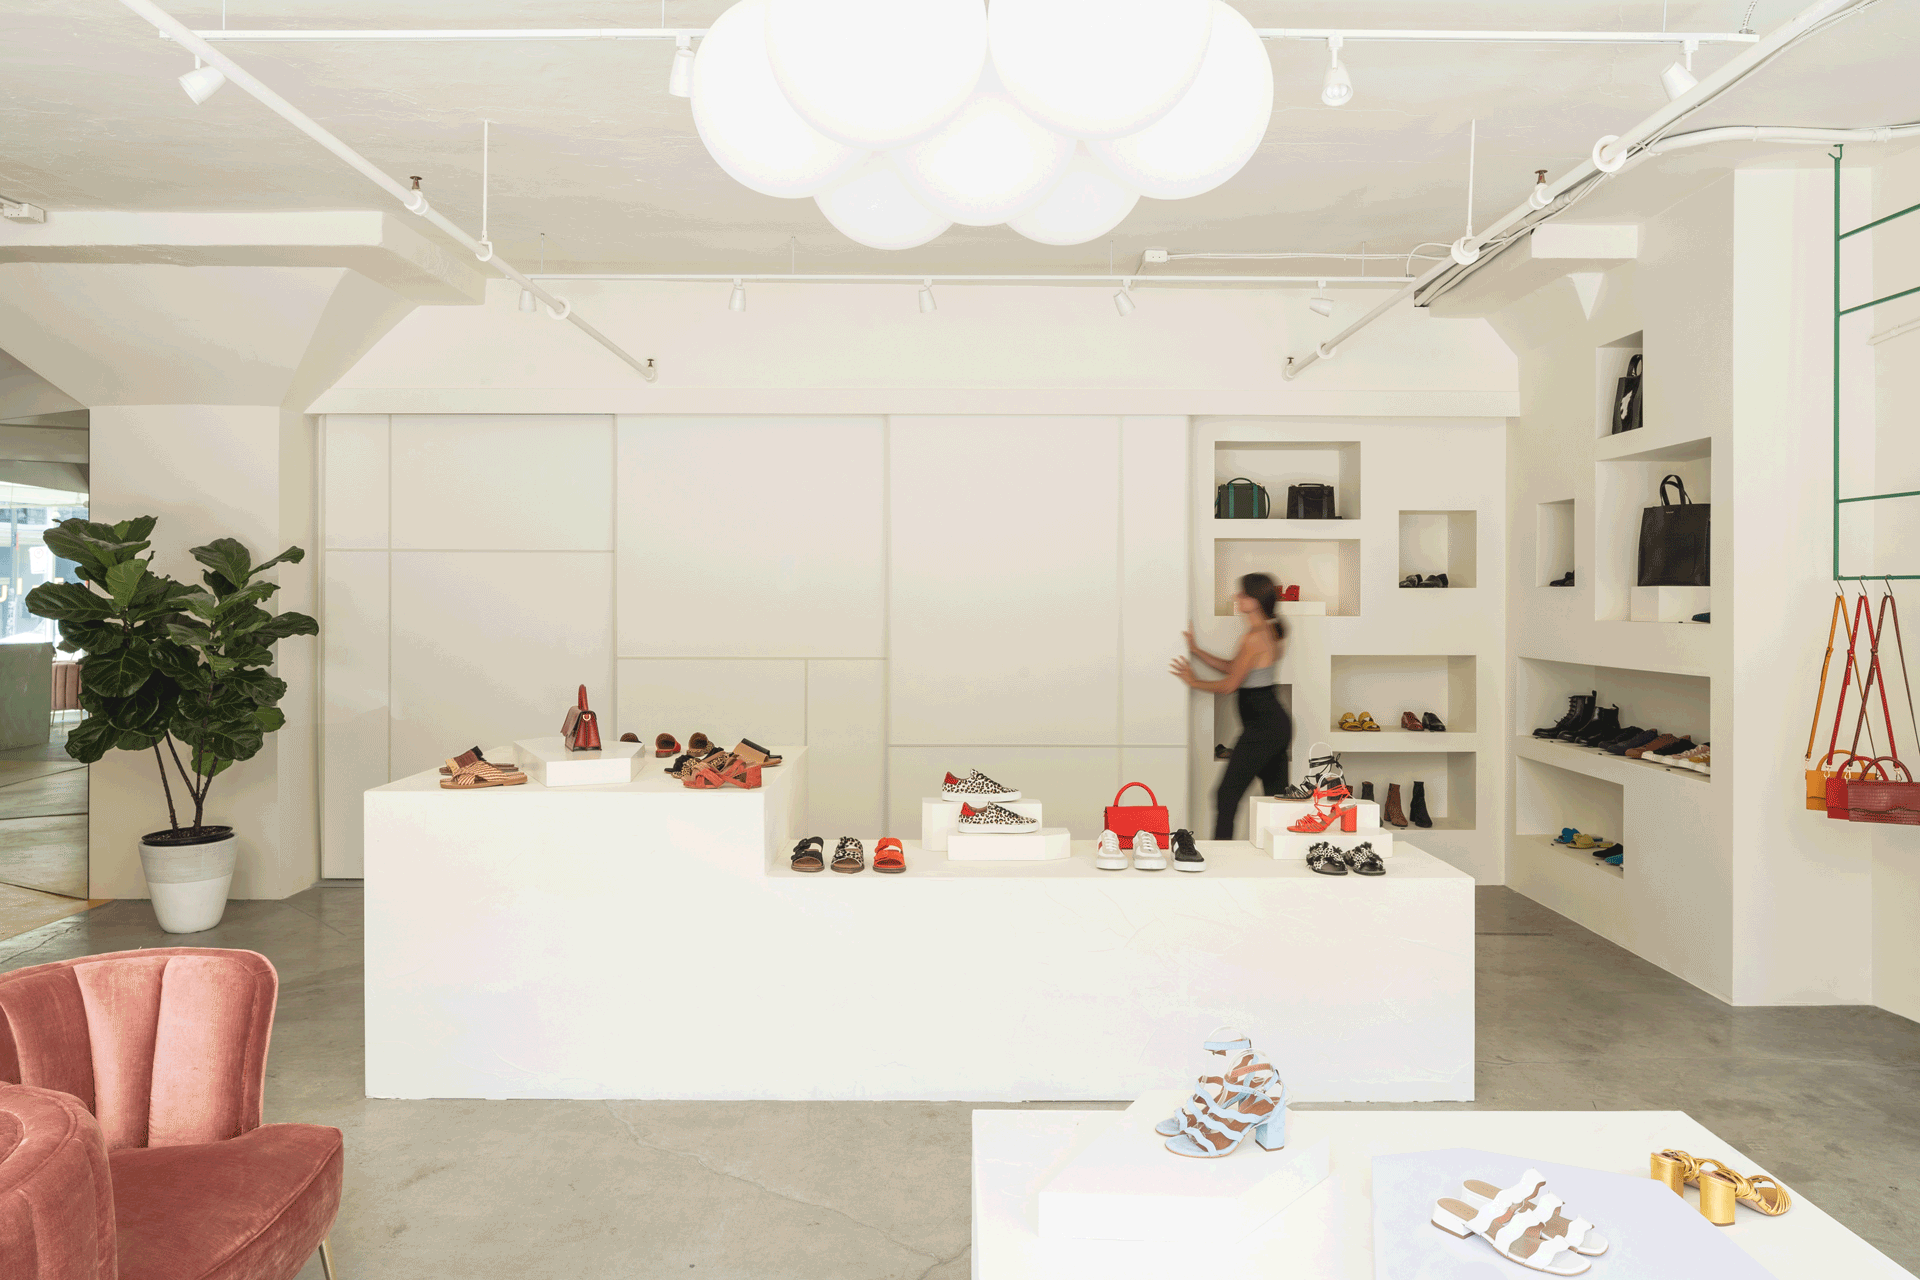   &lt;&lt;&lt;&lt;&lt; BACK   Maguire Boutique -  Atelier Catherine Catherine  © Raphaël Thibodeau 